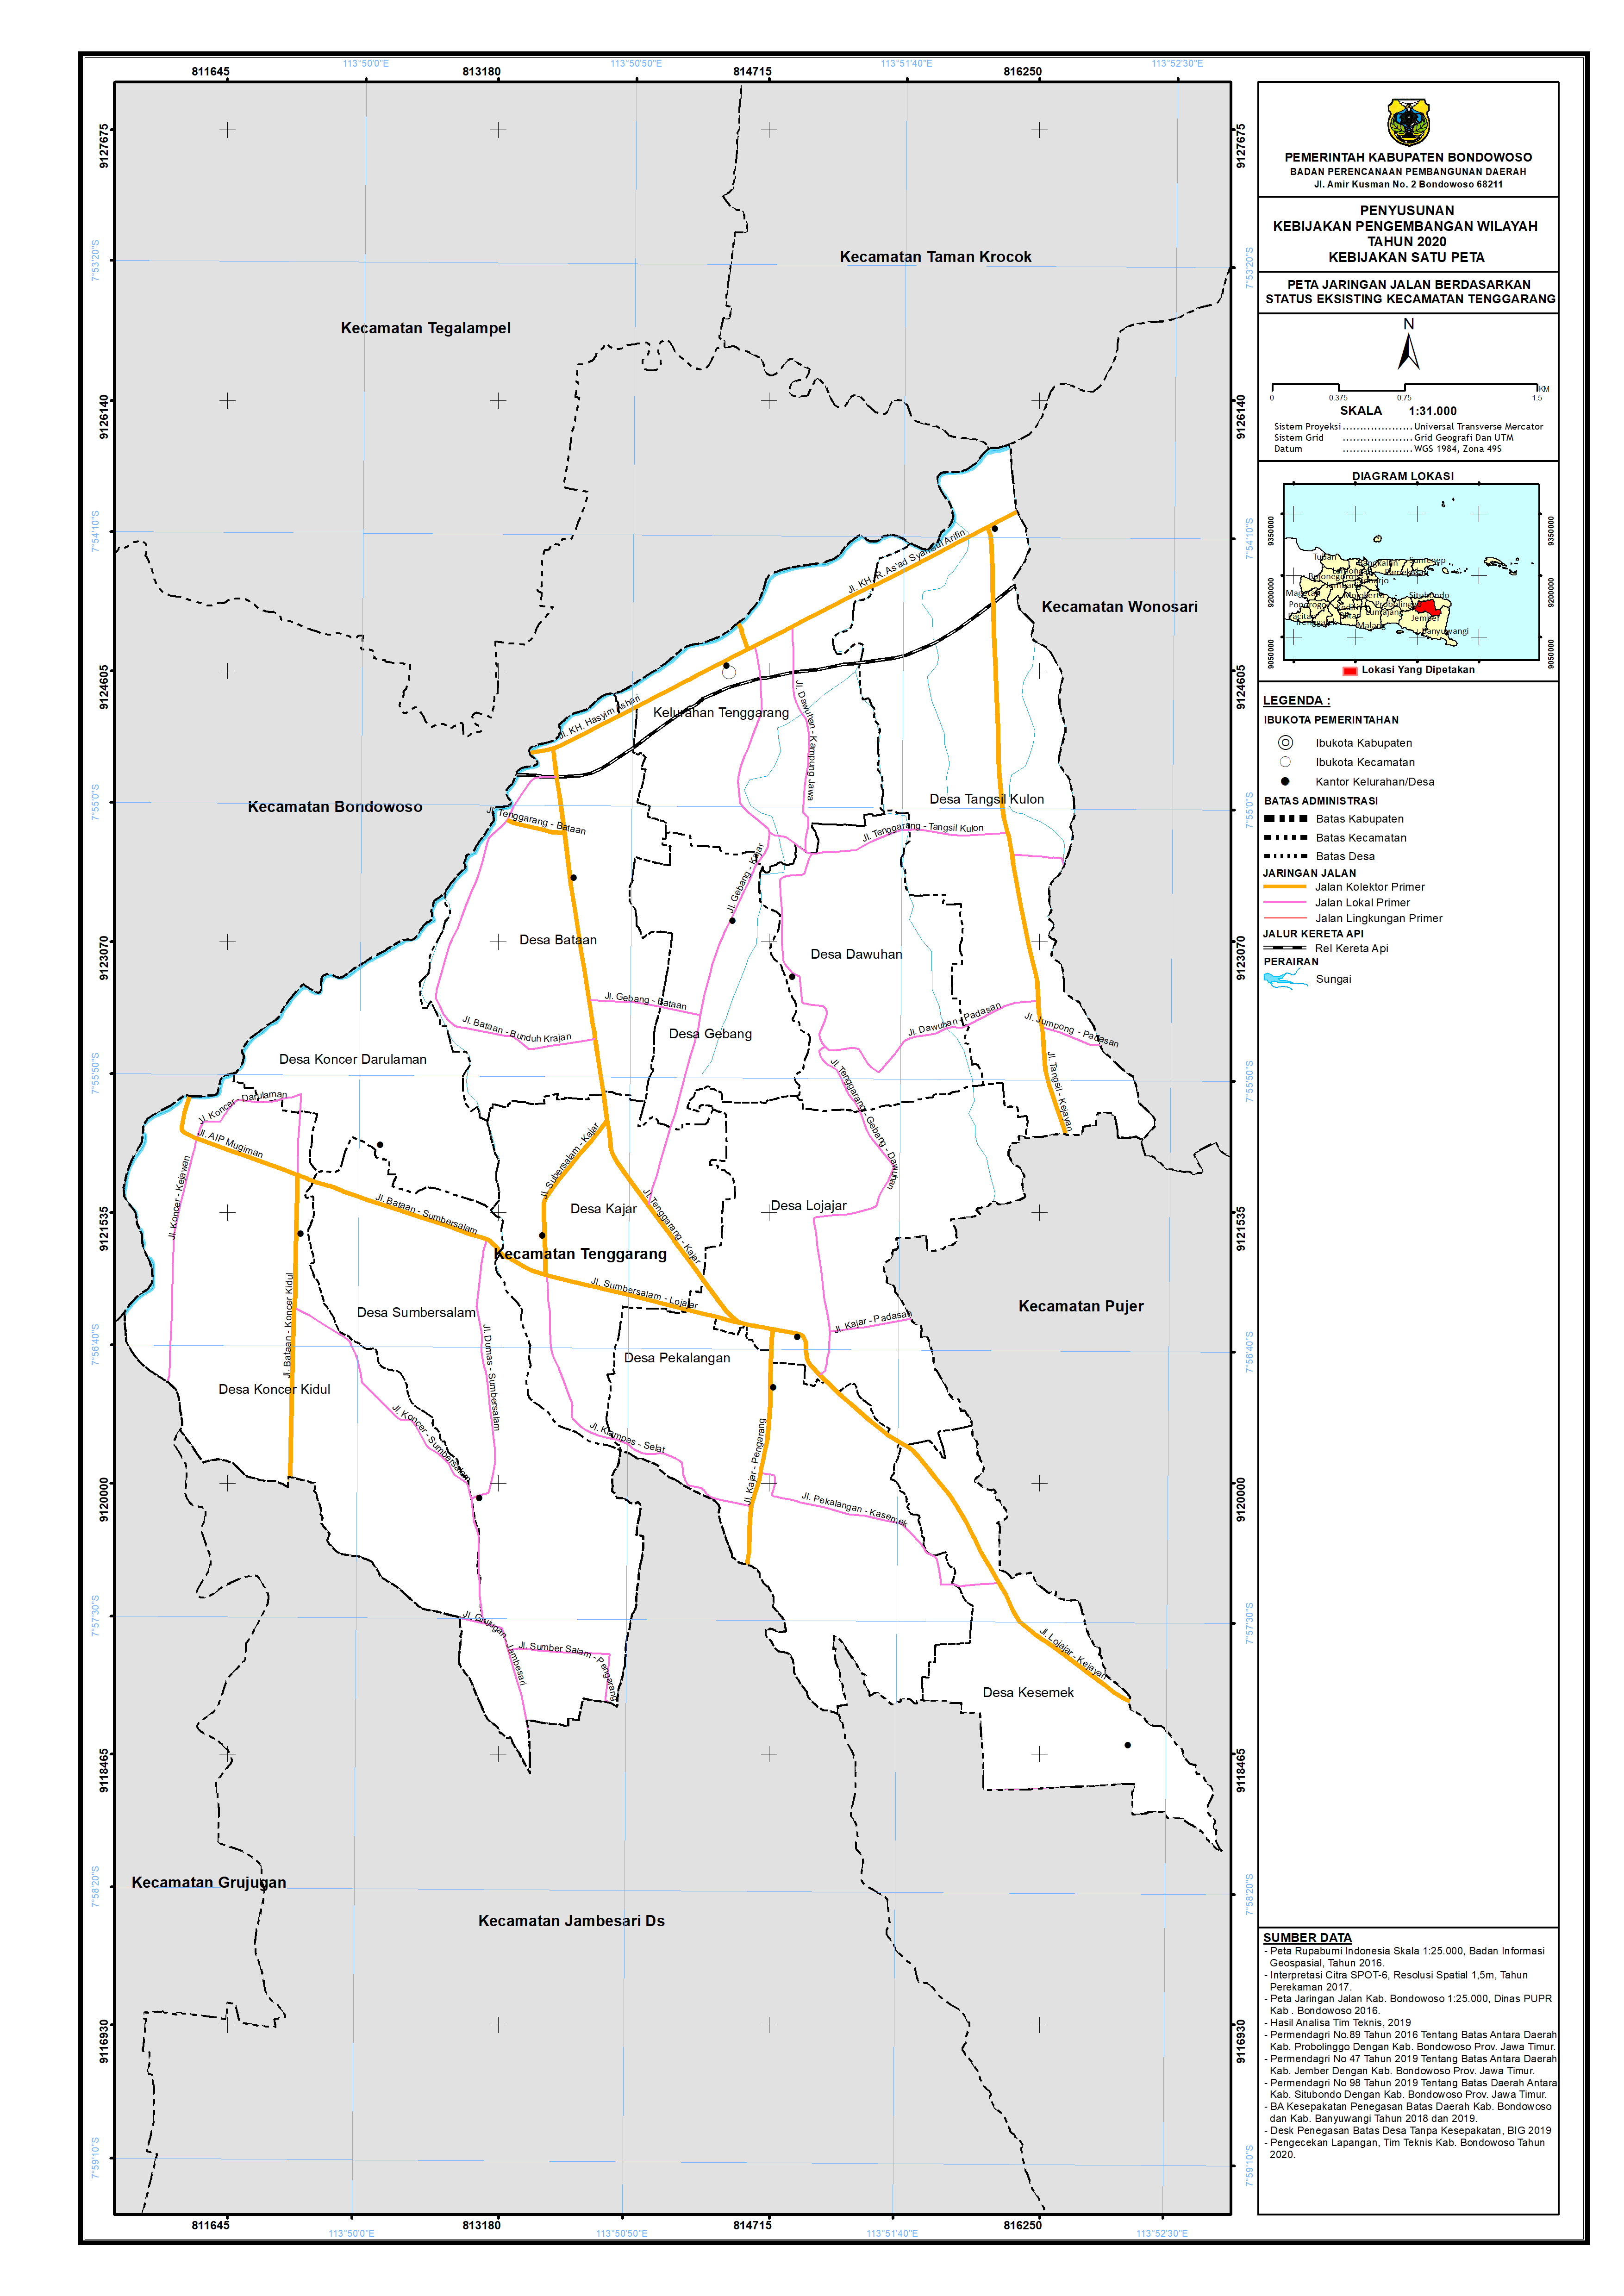 Peta Jaringan Jalan Berdasarkan Status Eksisting Kecamatan Tenggarang.png